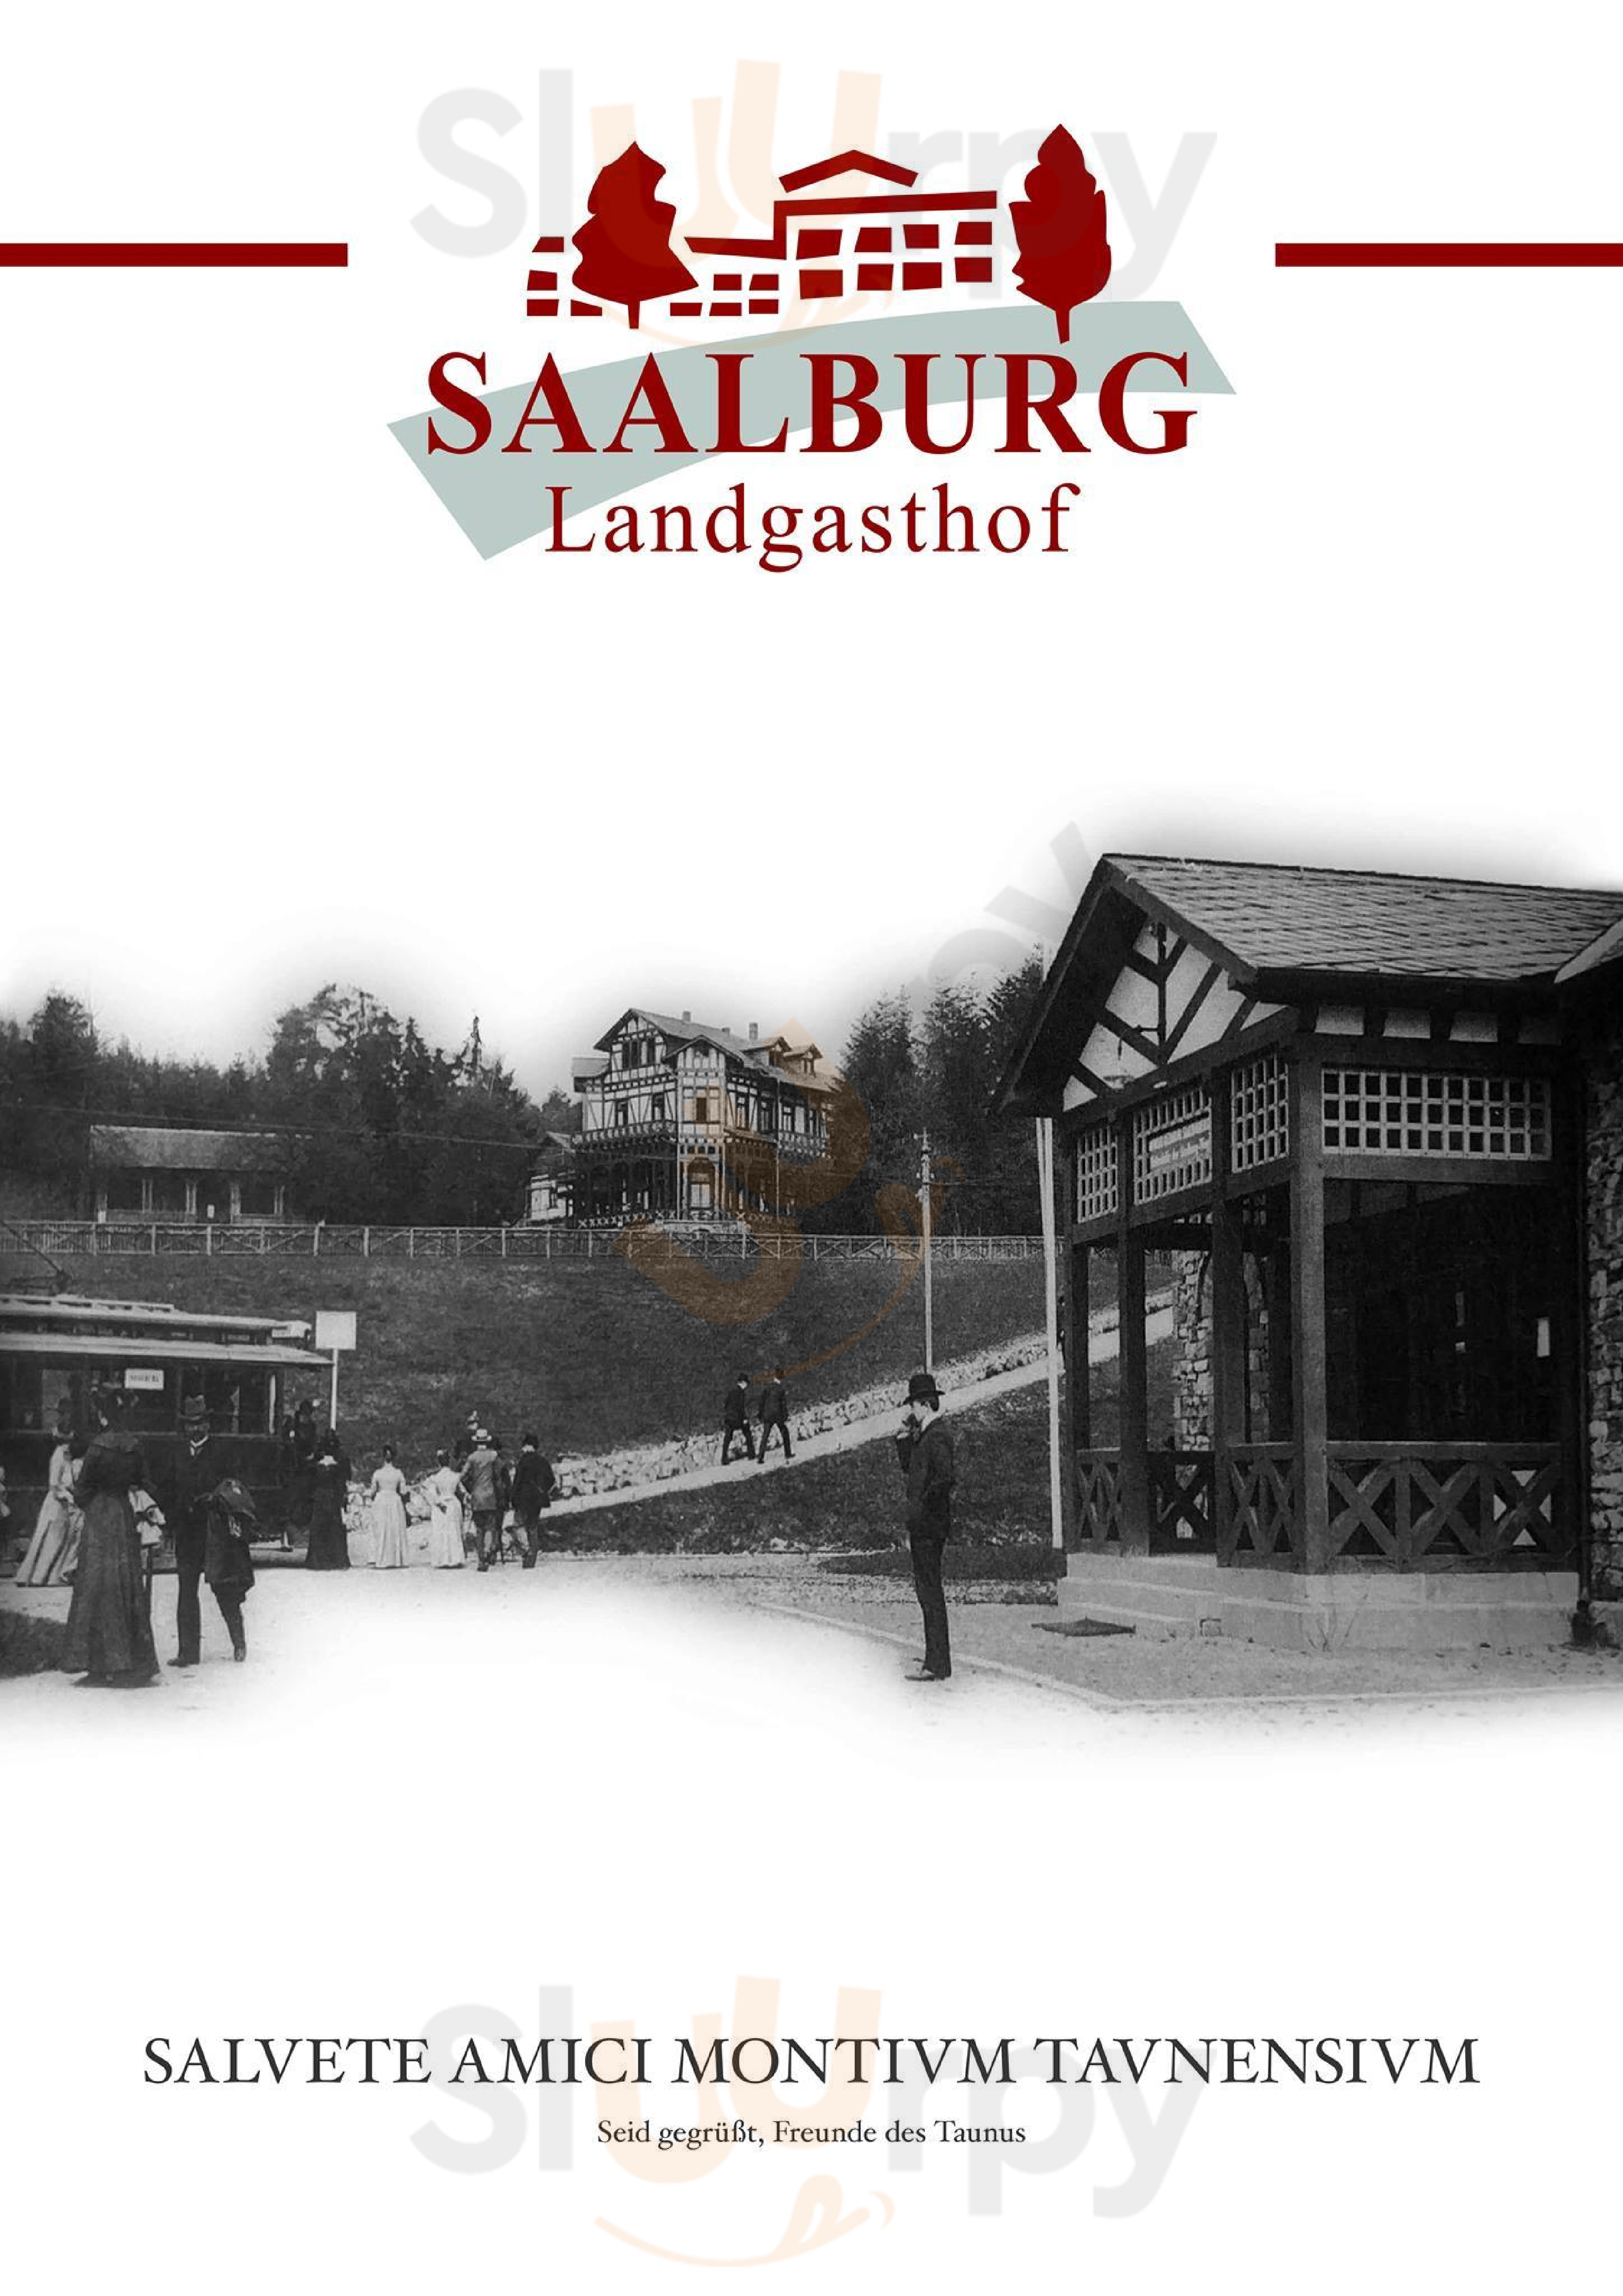 Landgasthof Saalburg Bad Homburg Menu - 1